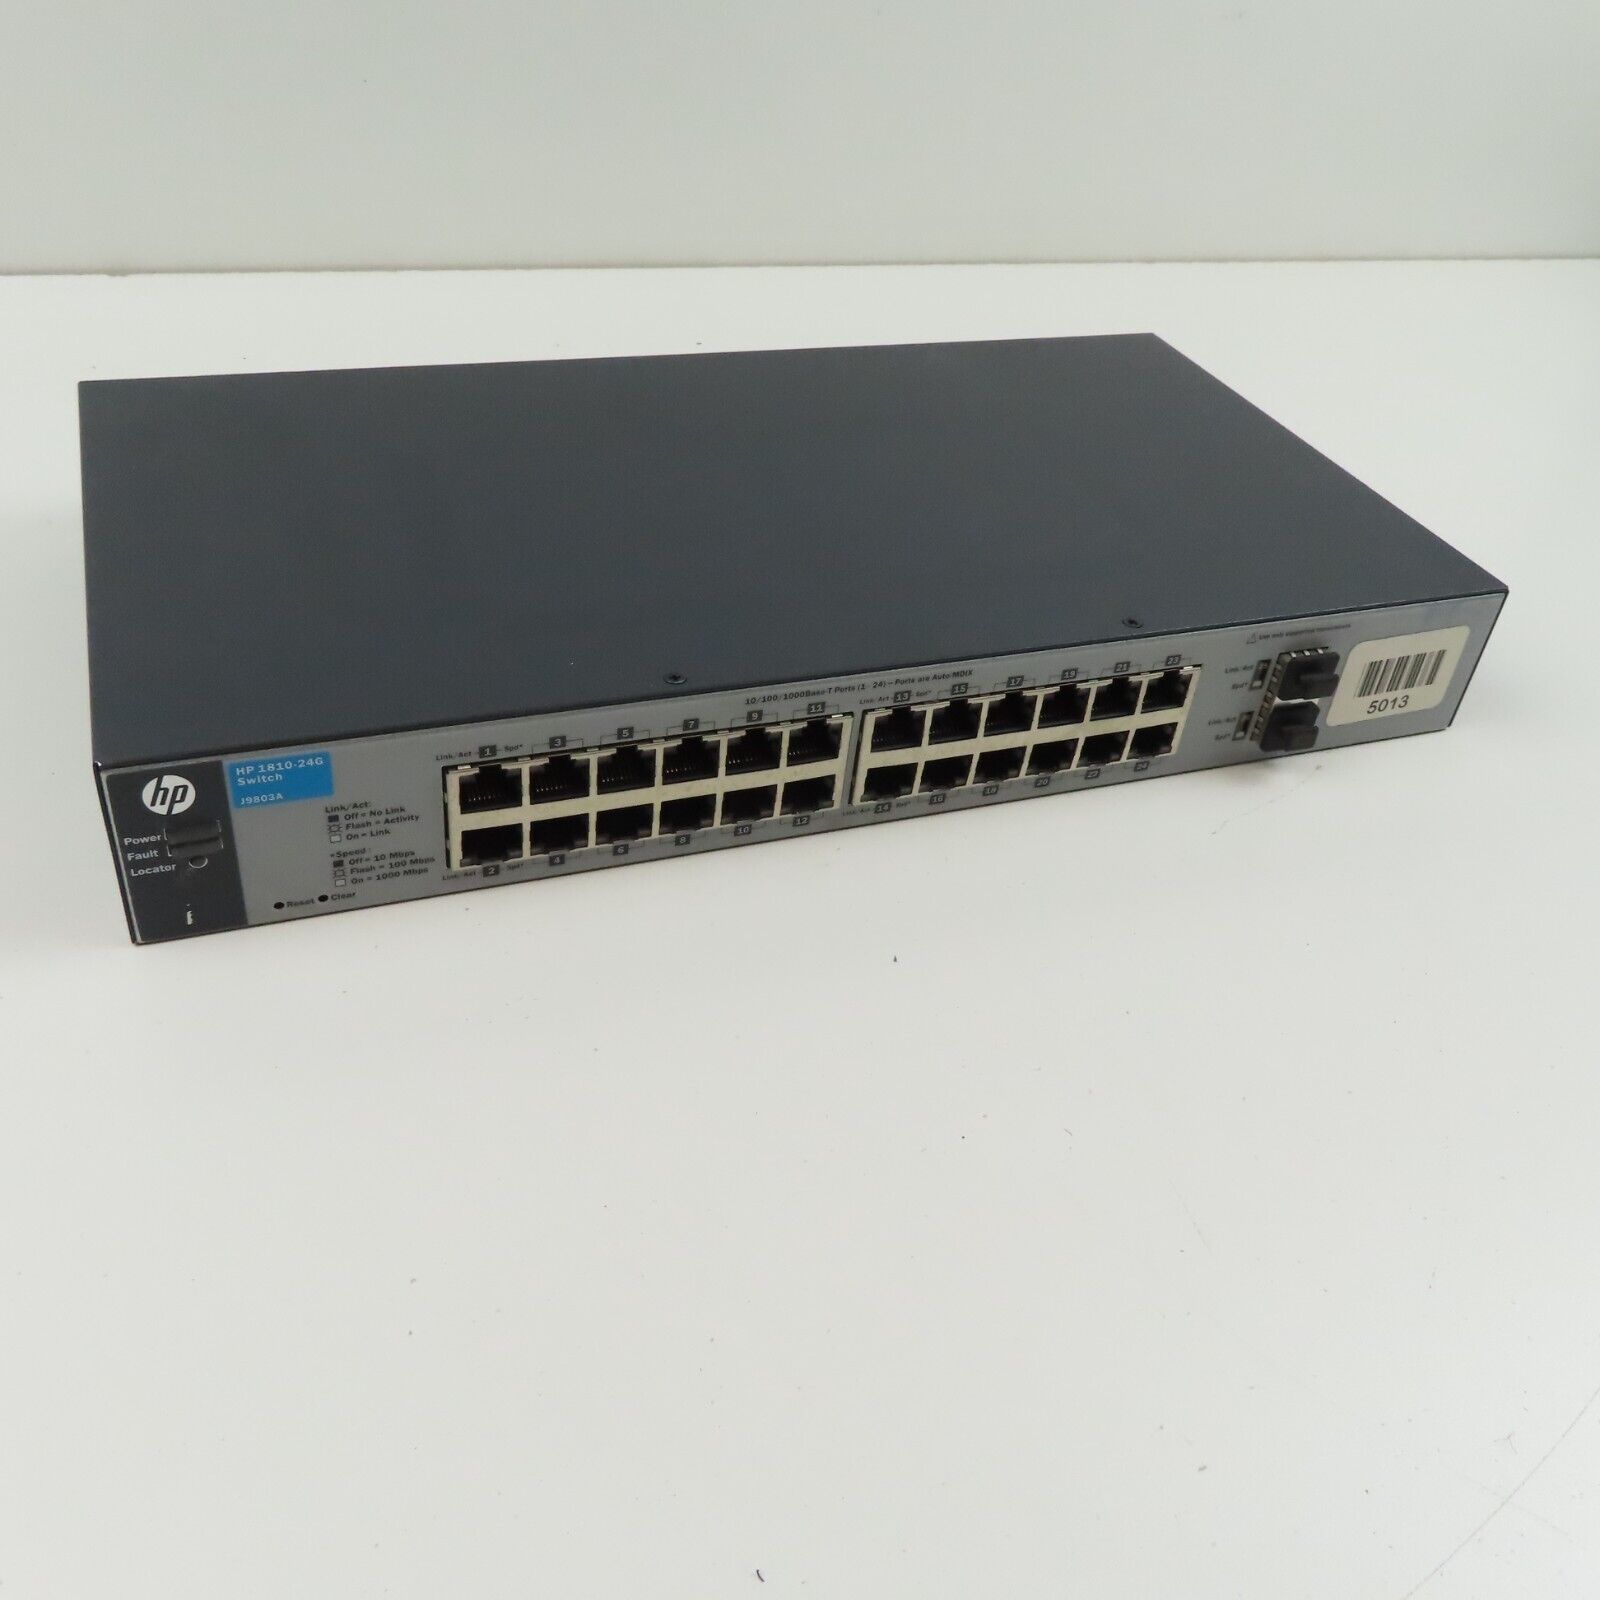 HP J9803A 1810-24G 24-Port Gigabit Smart Web Managed Fast Ethernet Switch